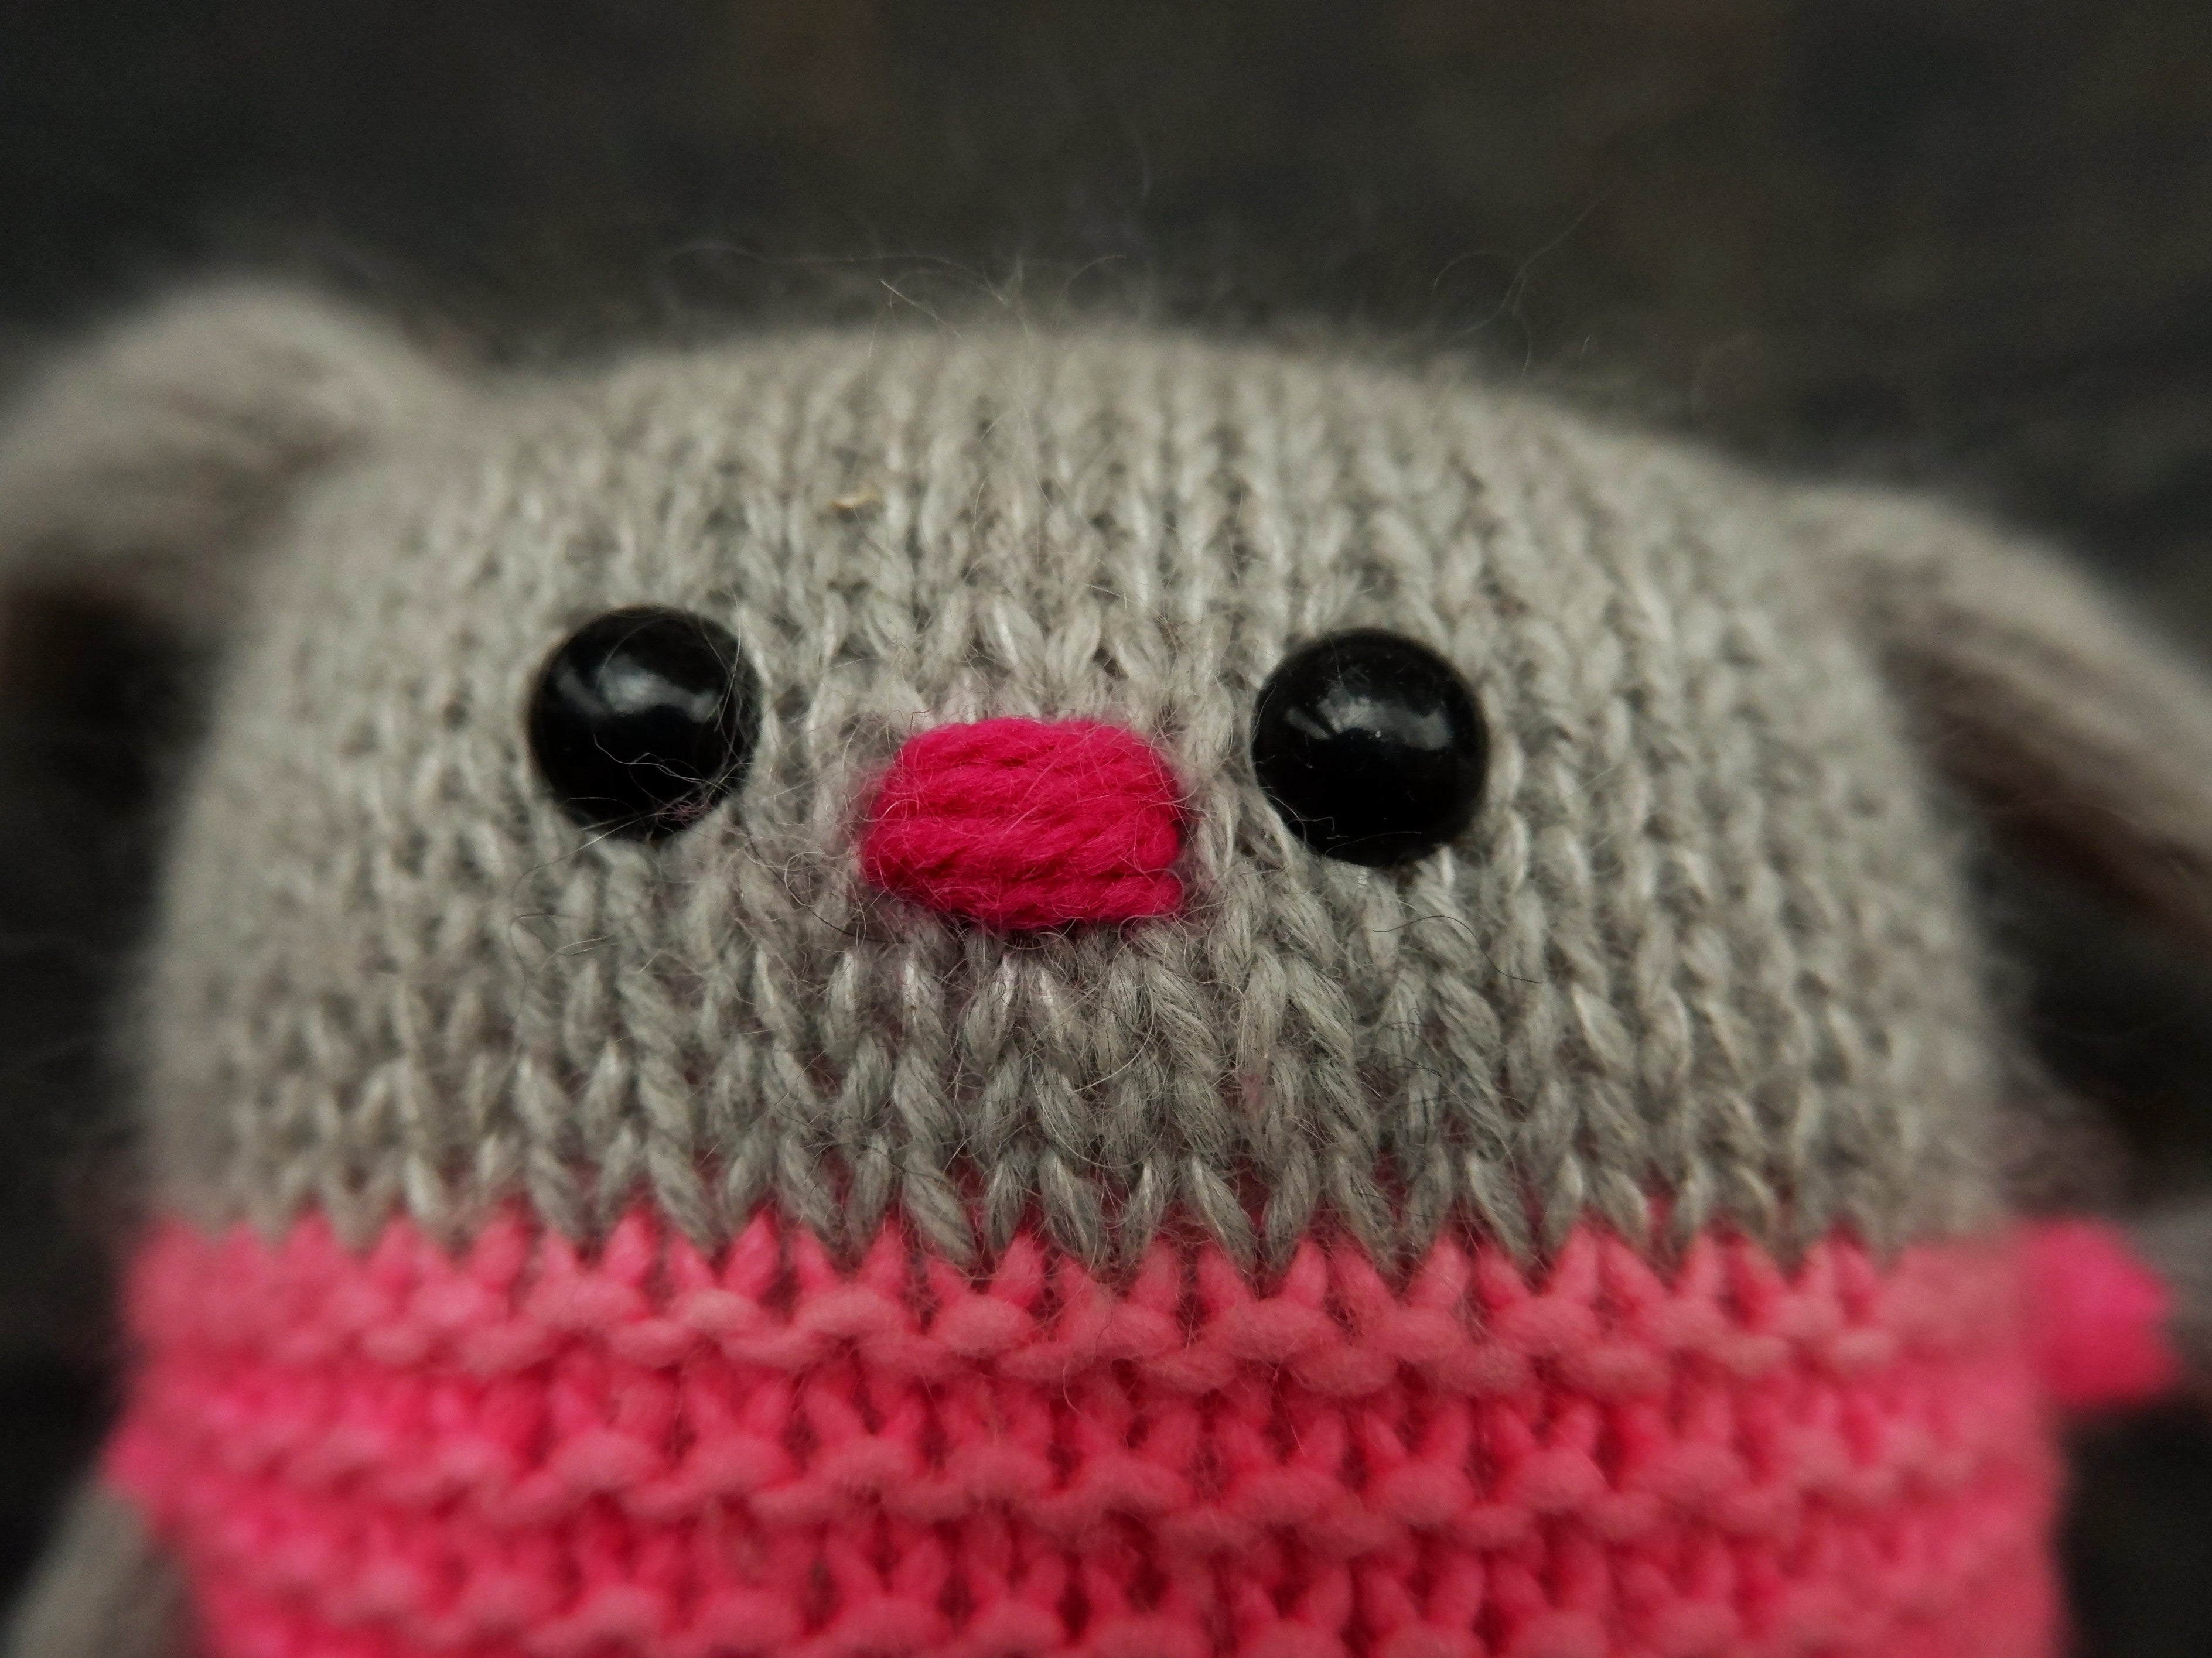 safety eyes crochet